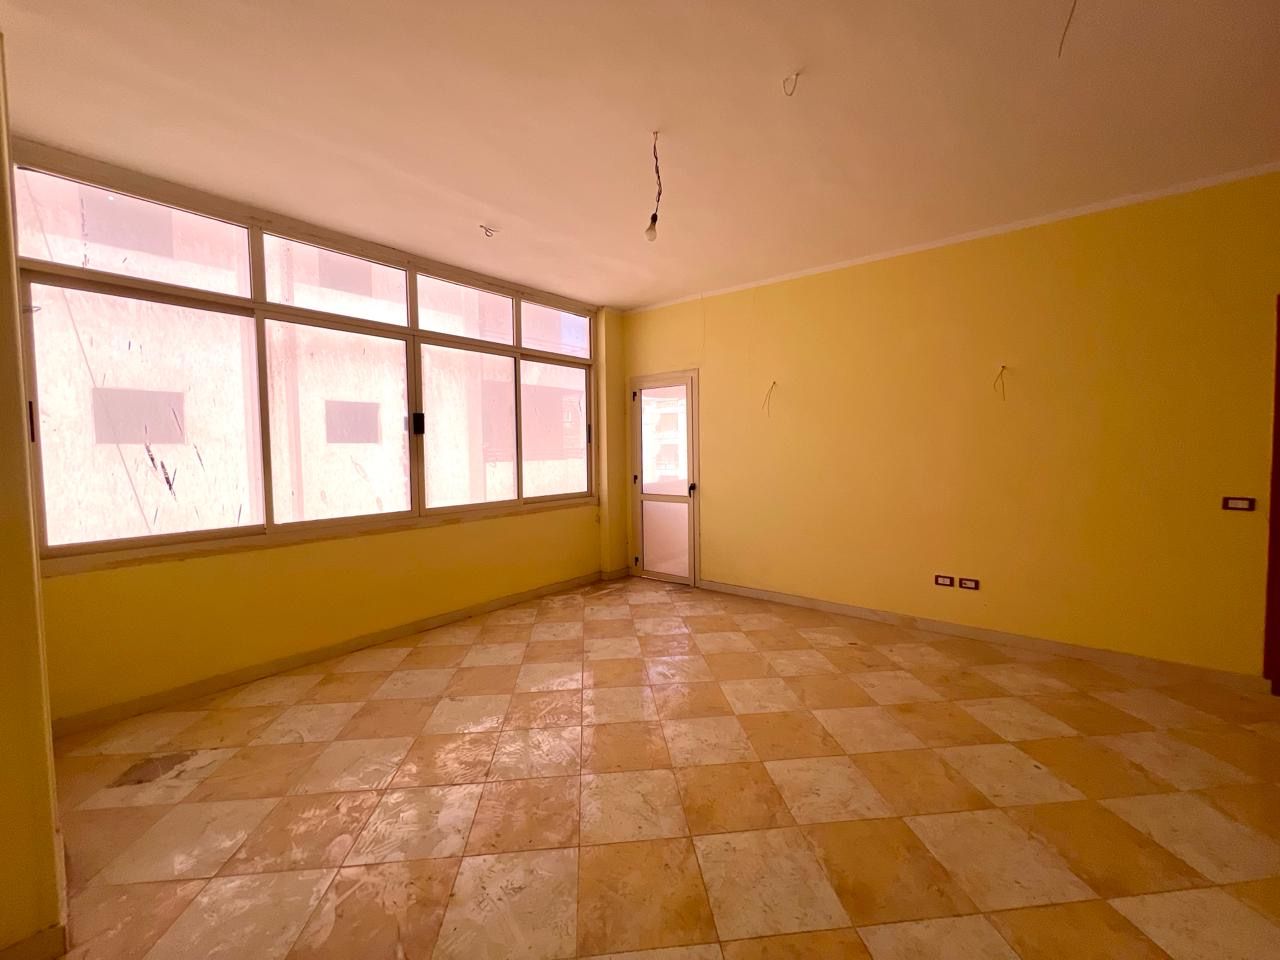 Квартира в Хургаде, Египет, 95 м² - фото 1